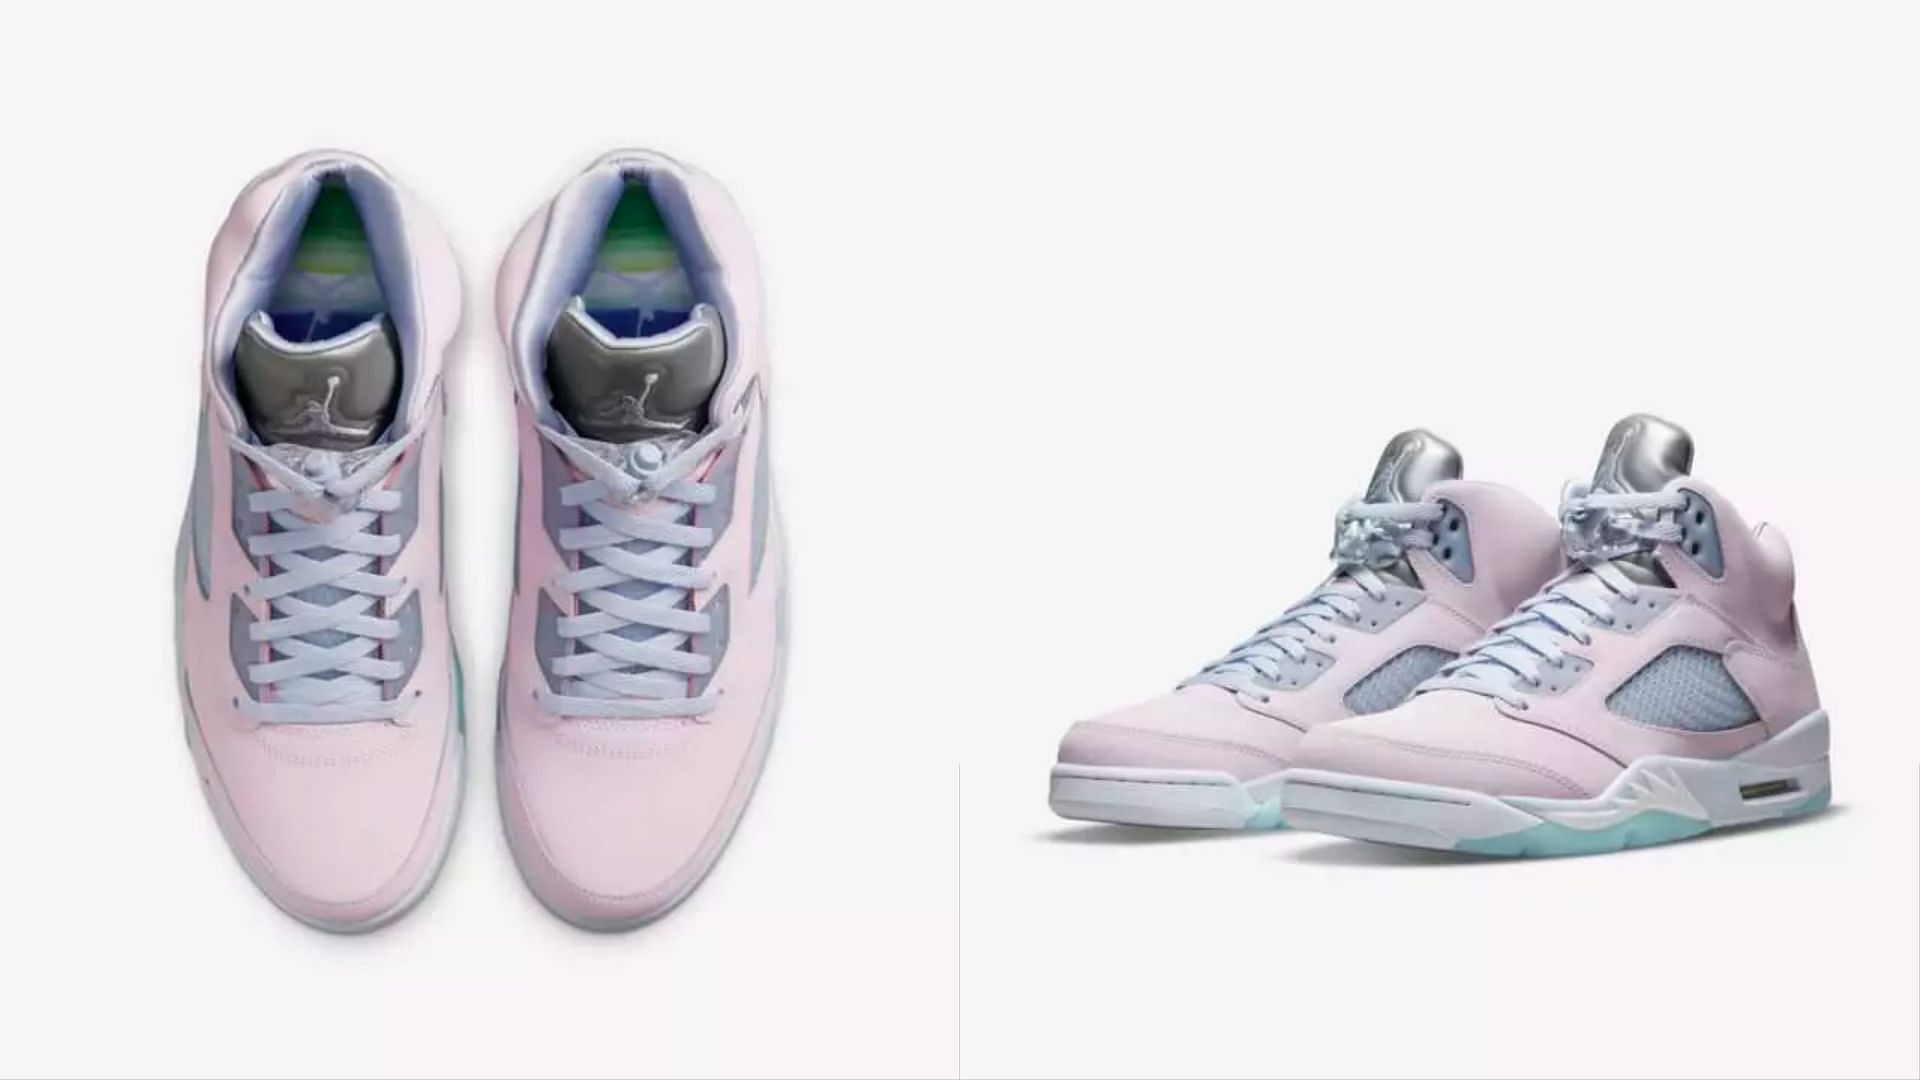 Nike's upcoming retro Air Jordan 5 Regal Pink sneakers (Image via Nike)